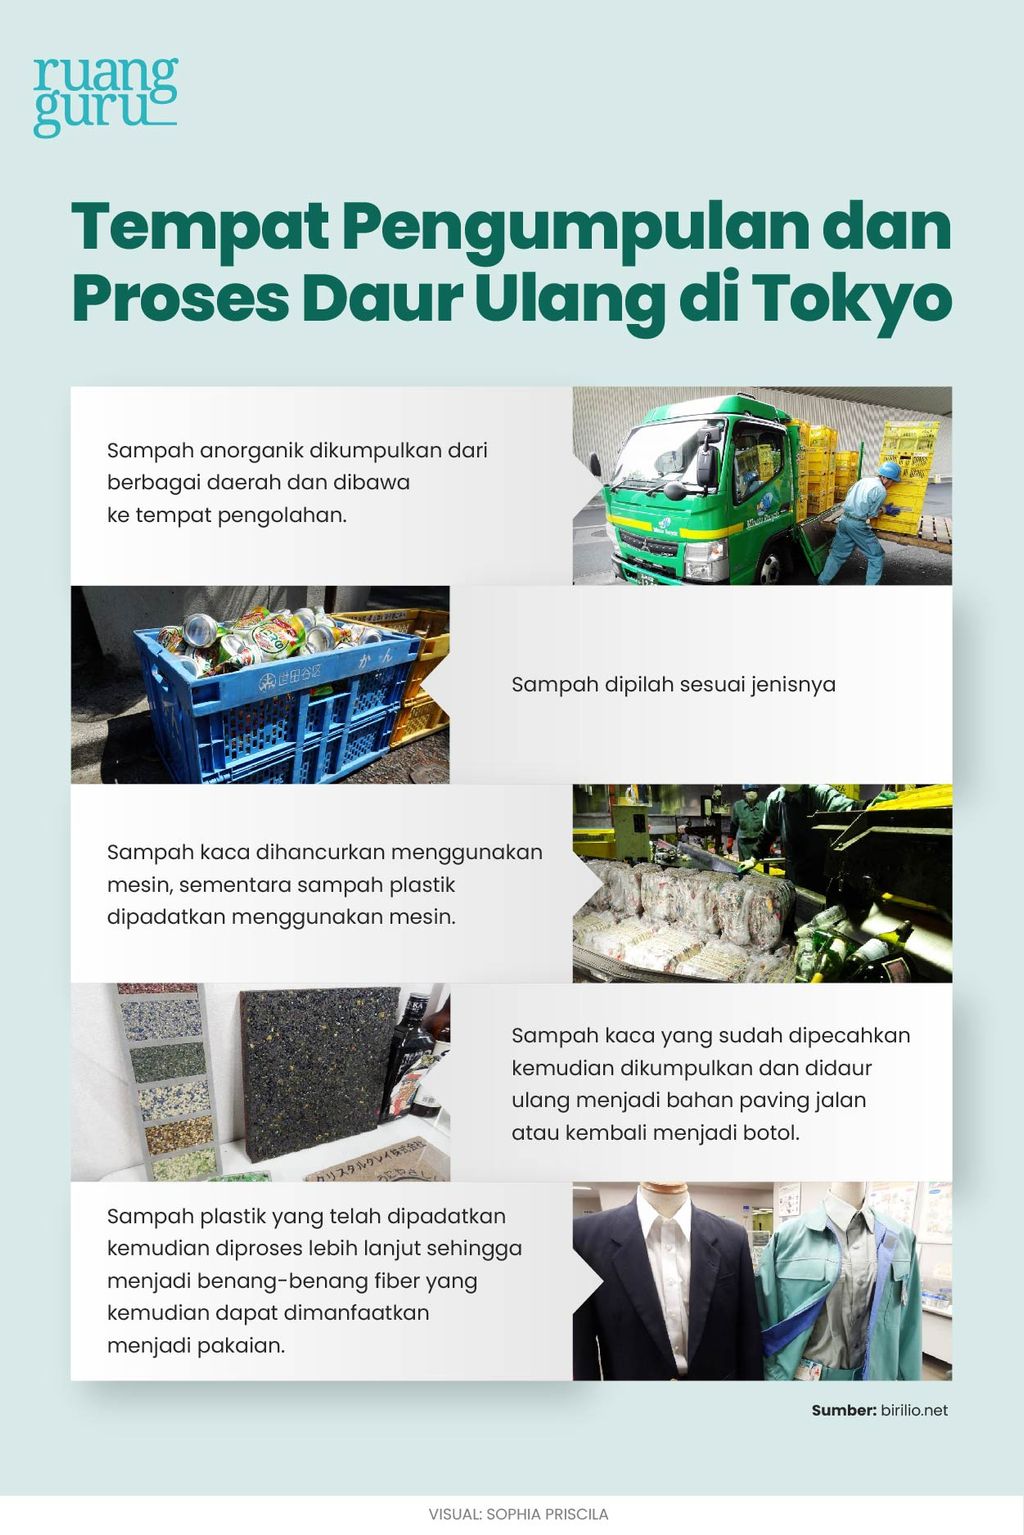 Contoh tempat pengumpulan dan proses daur ulang sampah di Tokyo